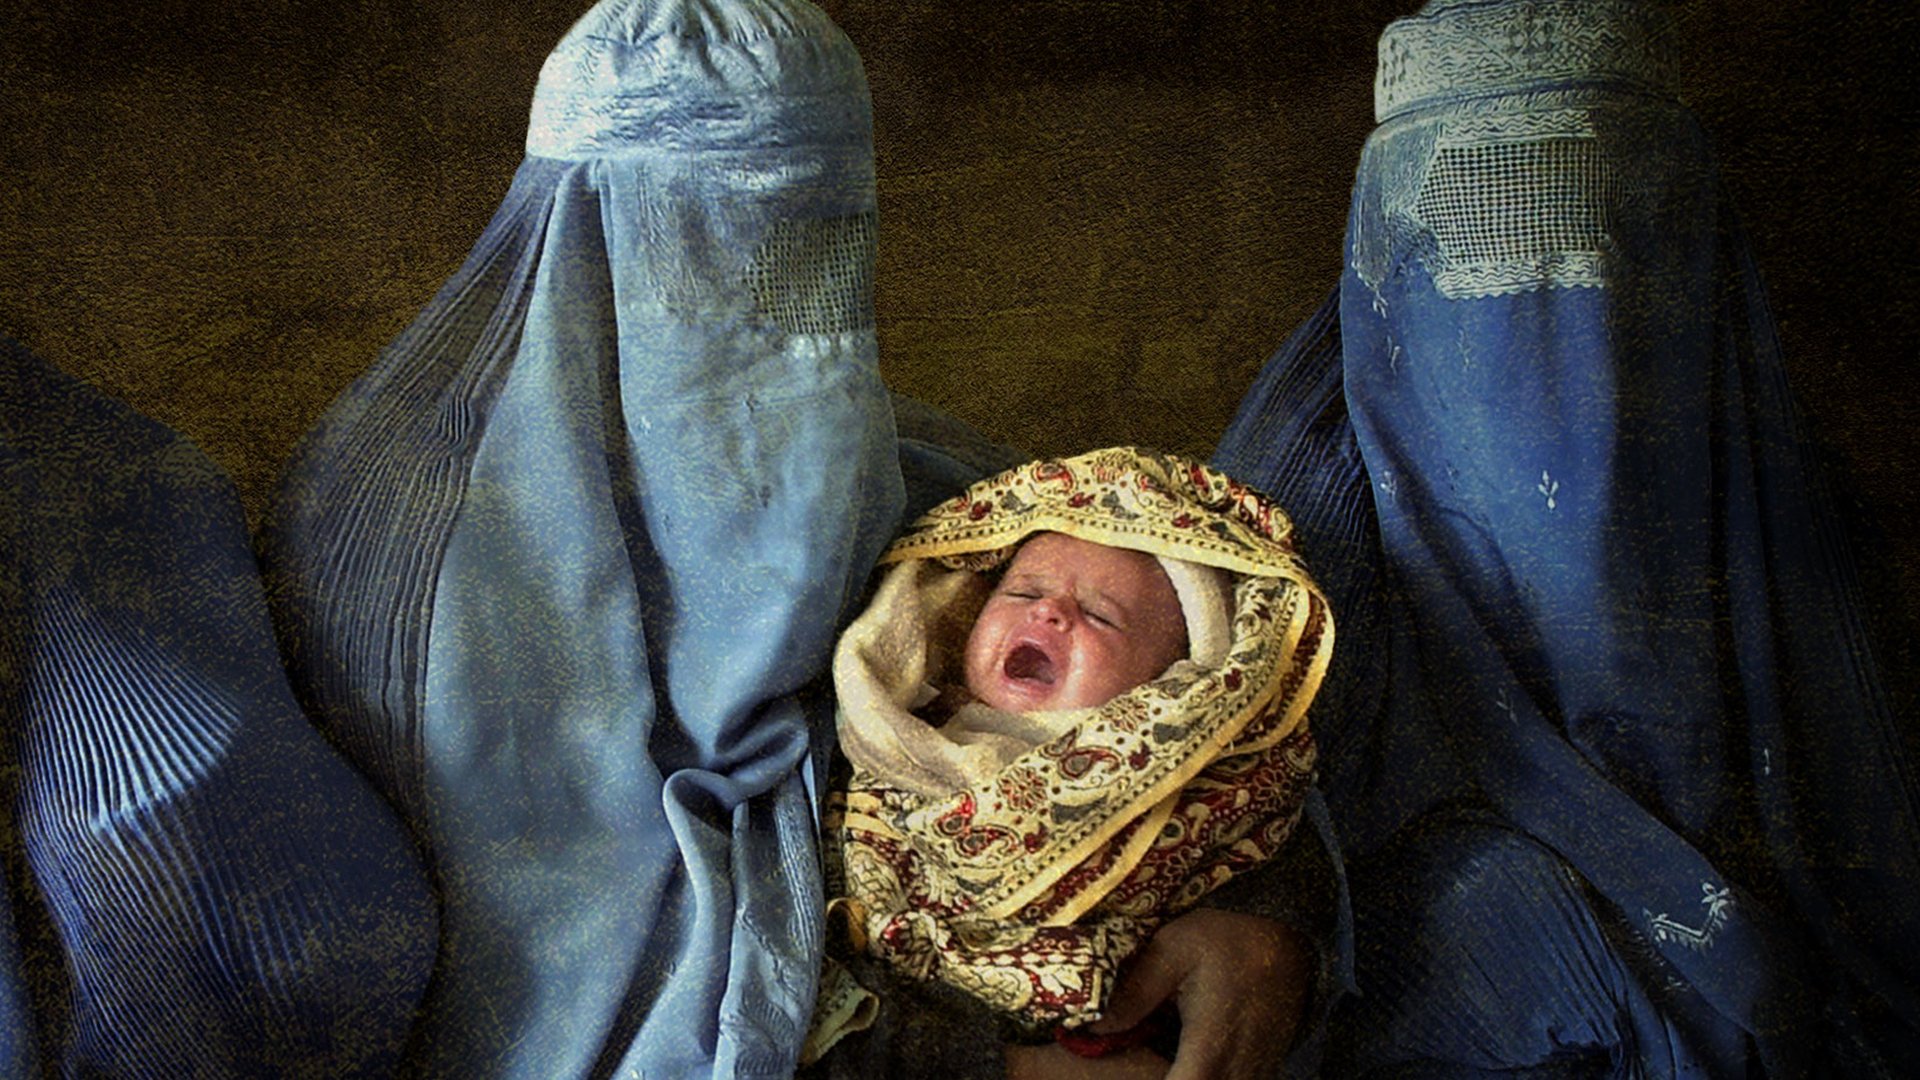 L'histoire de ces femmes traumatisées par l'accouchement - BBC News Afrique